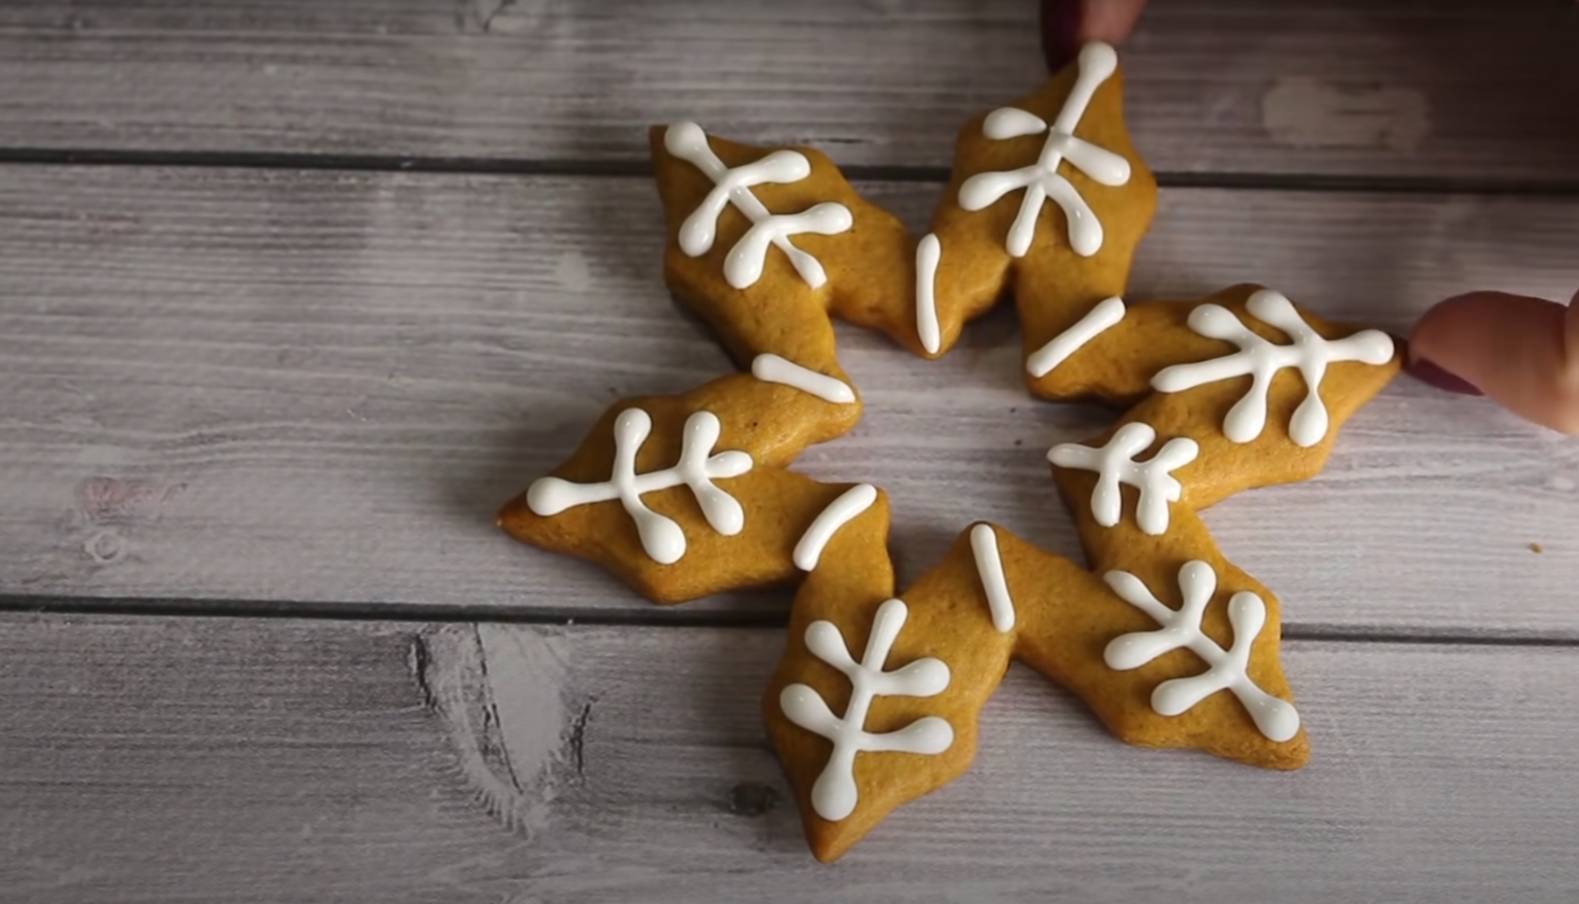 Имбирное печенье на новый год - классические рецепты с глазурью в домашних условиях